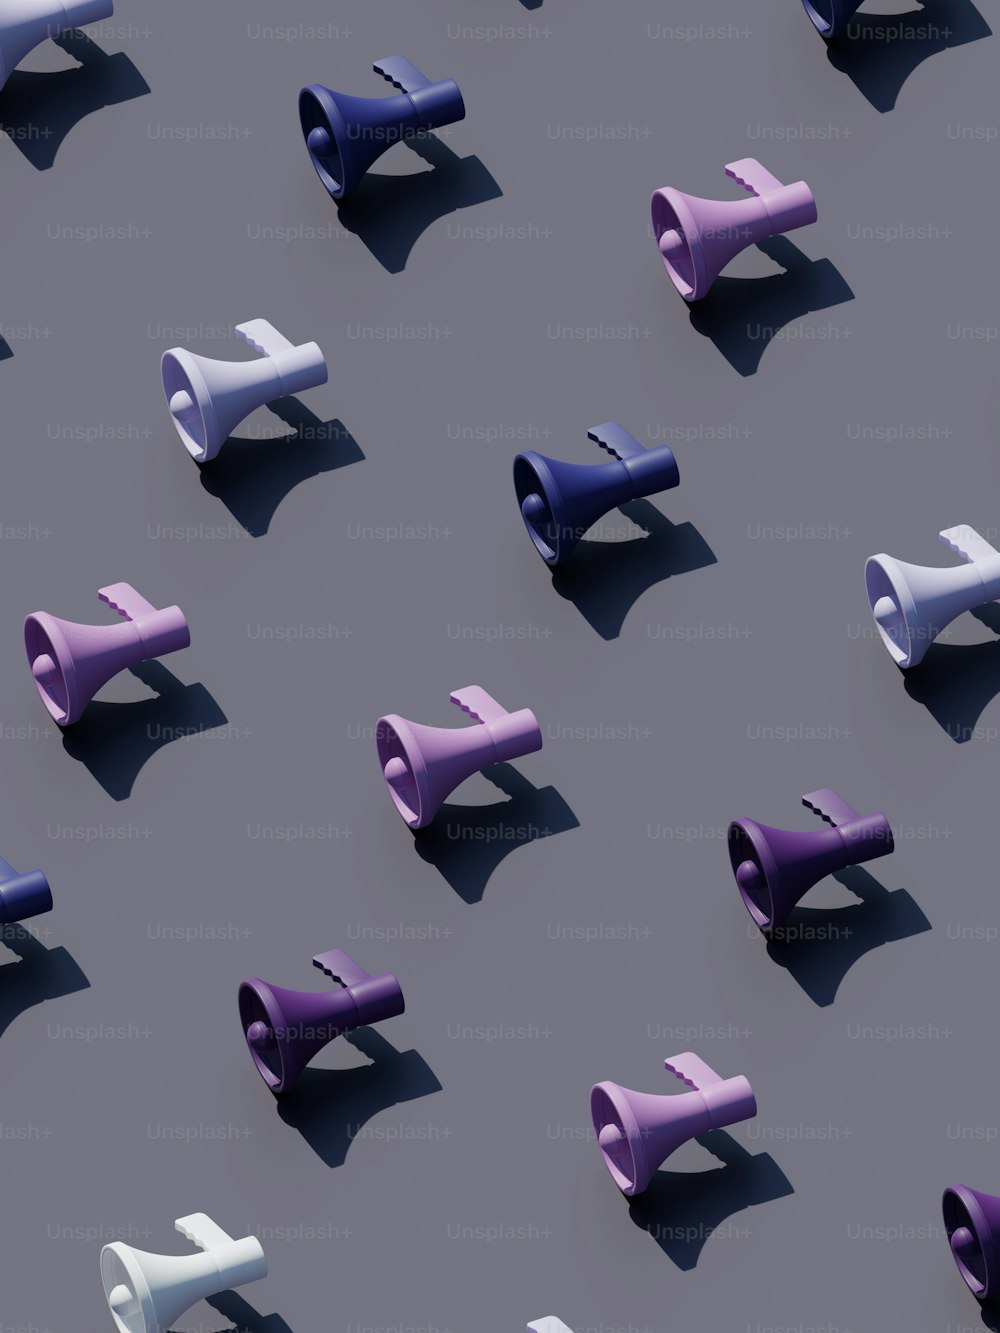 Eine Gruppe von violetten und weißen Objekten auf einer grauen Oberfläche